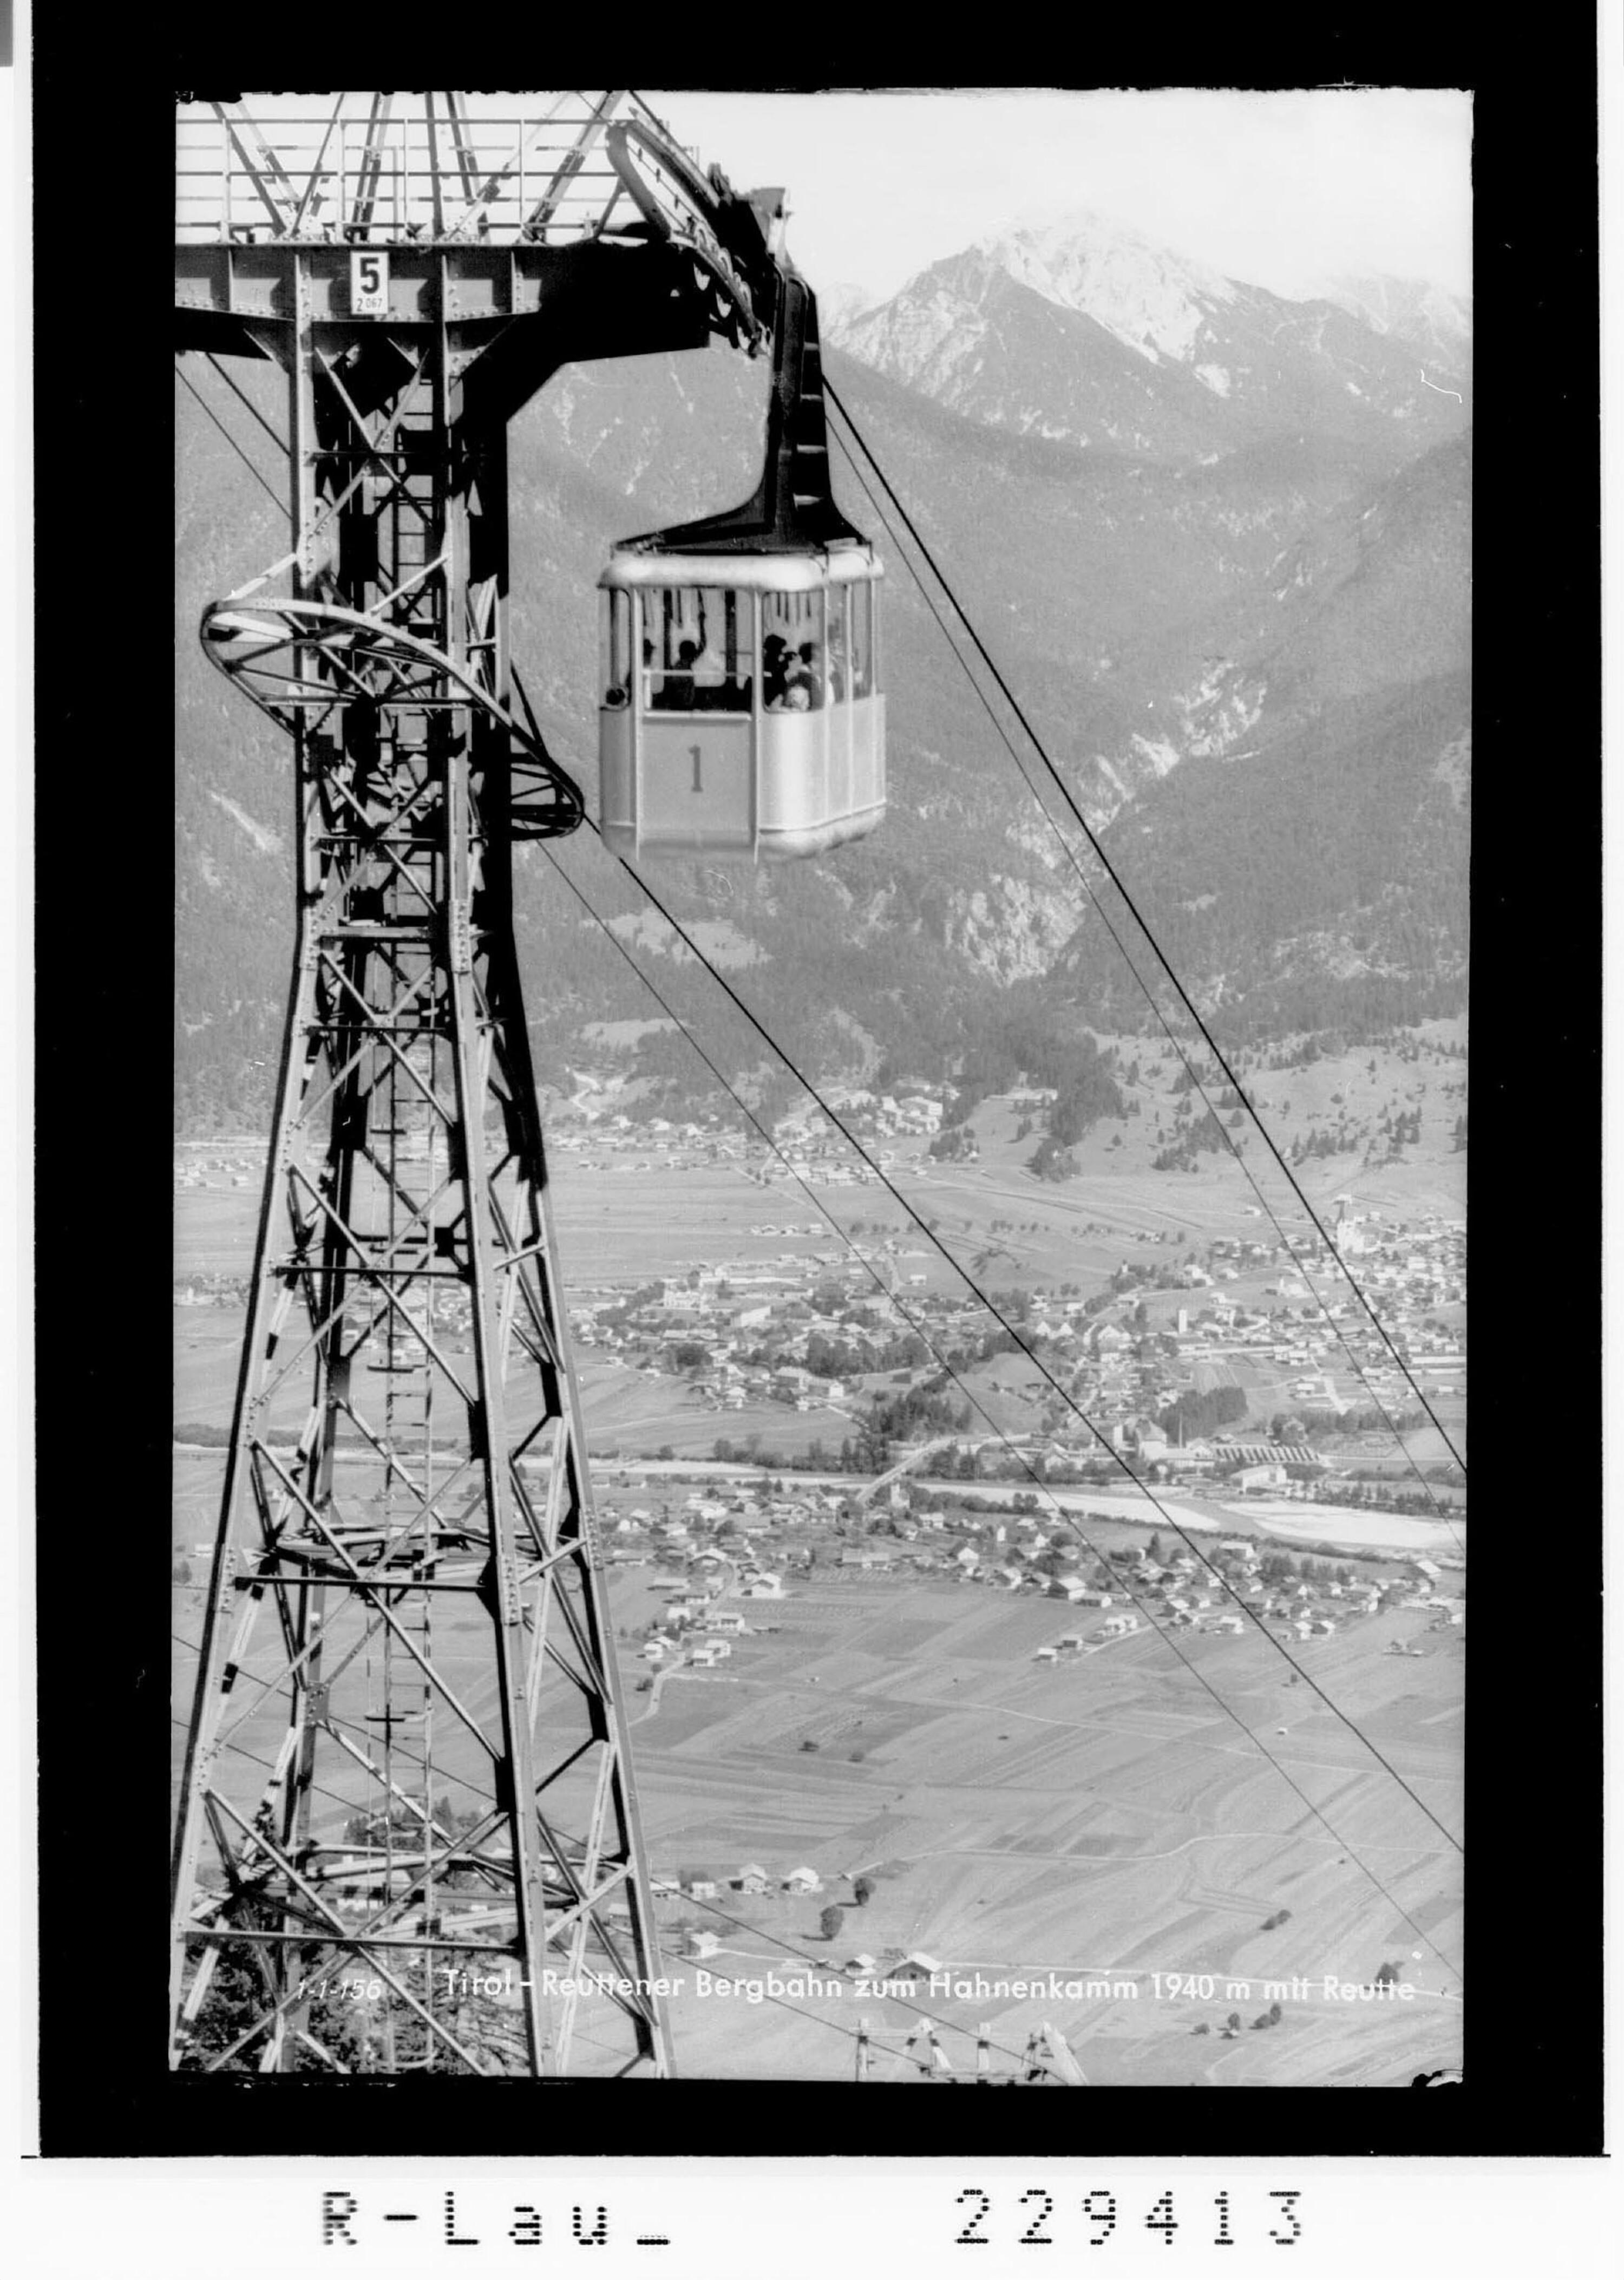 Tirol - Reuttener Bergbahn zum Hahnenkamm 1940 m mit Reutte></div>


    <hr>
    <div class=